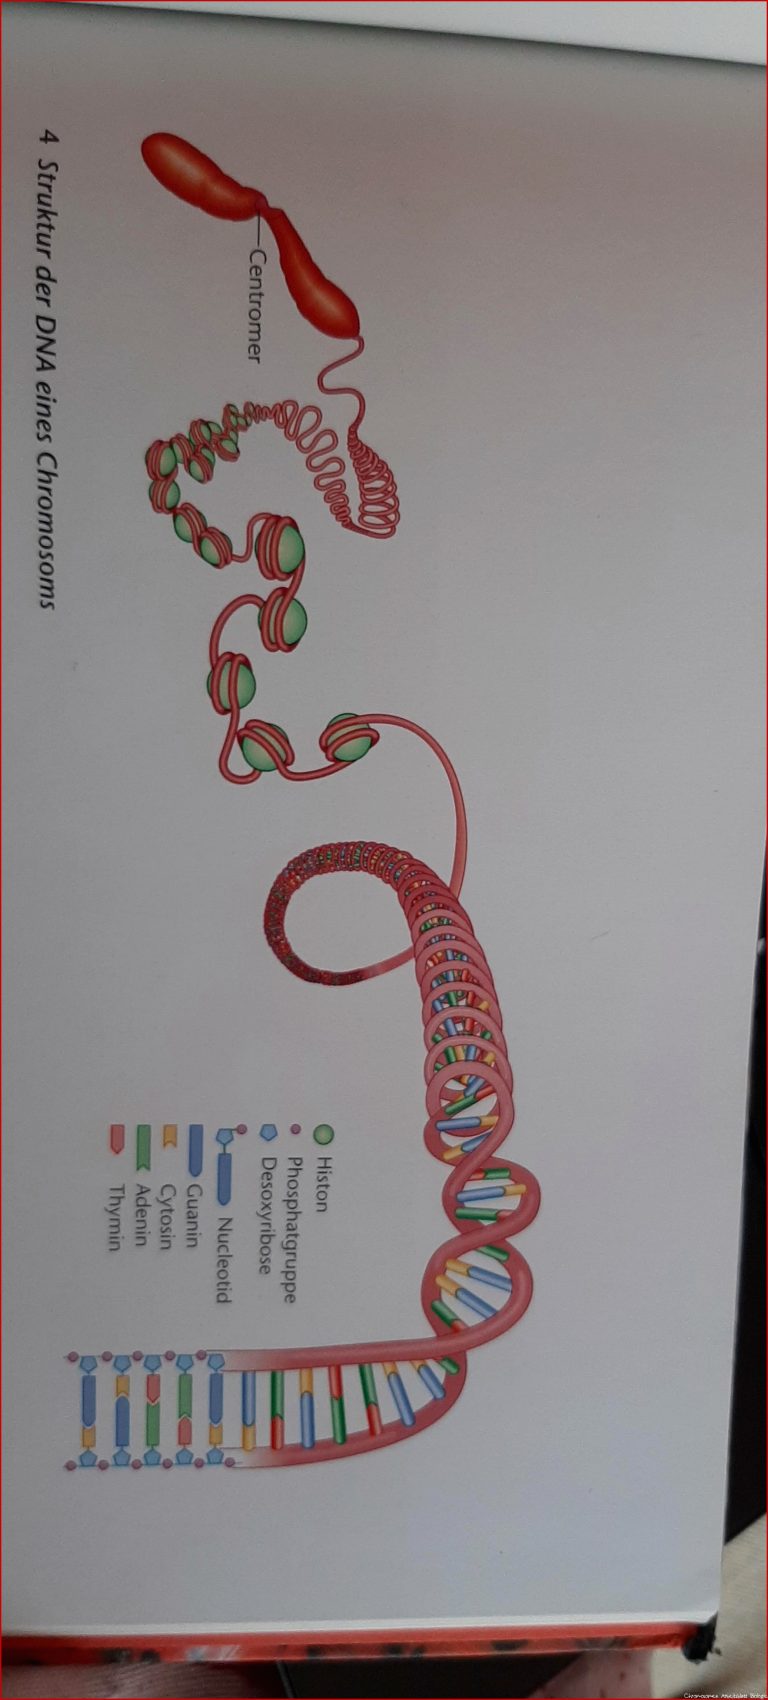 Aufbau der DNA Erklären Sie den Aufbau der DNA anhand der